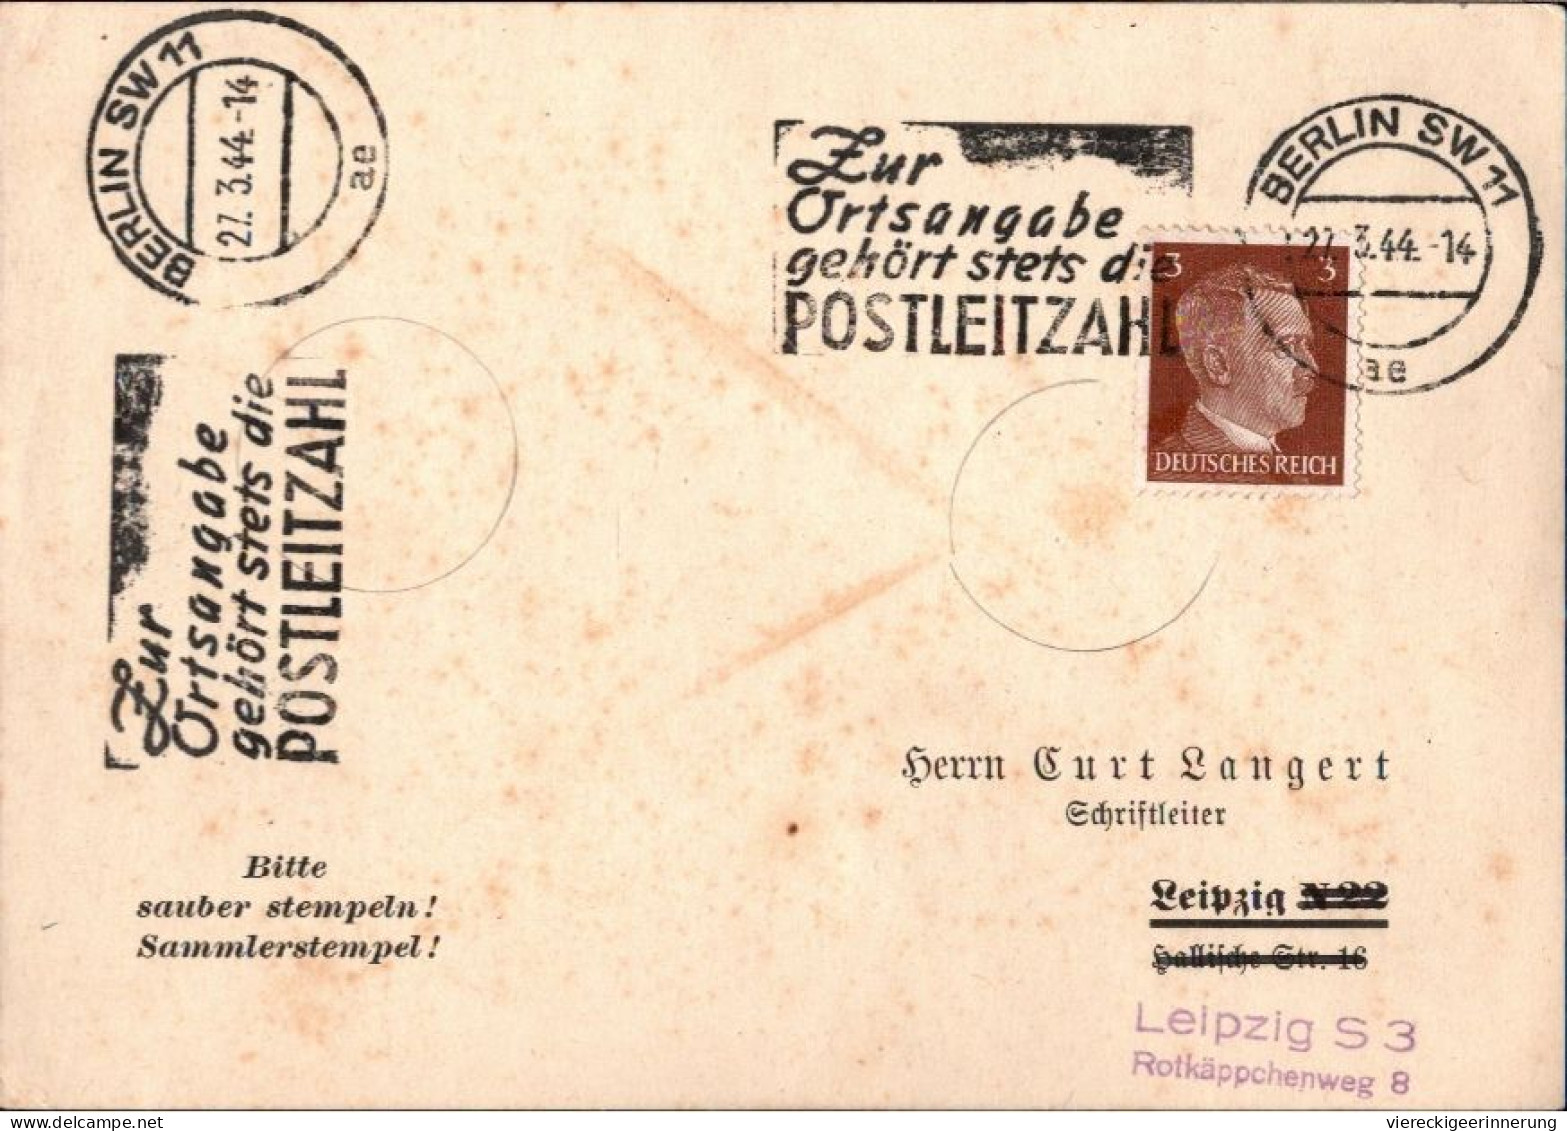 ! Karte Aus Berlin, Maschinenwerbestempel 1944, Posteigenwerbung, Zur Ortsangabe Gehörst Stets Die  Postleitzahl - Brieven En Documenten